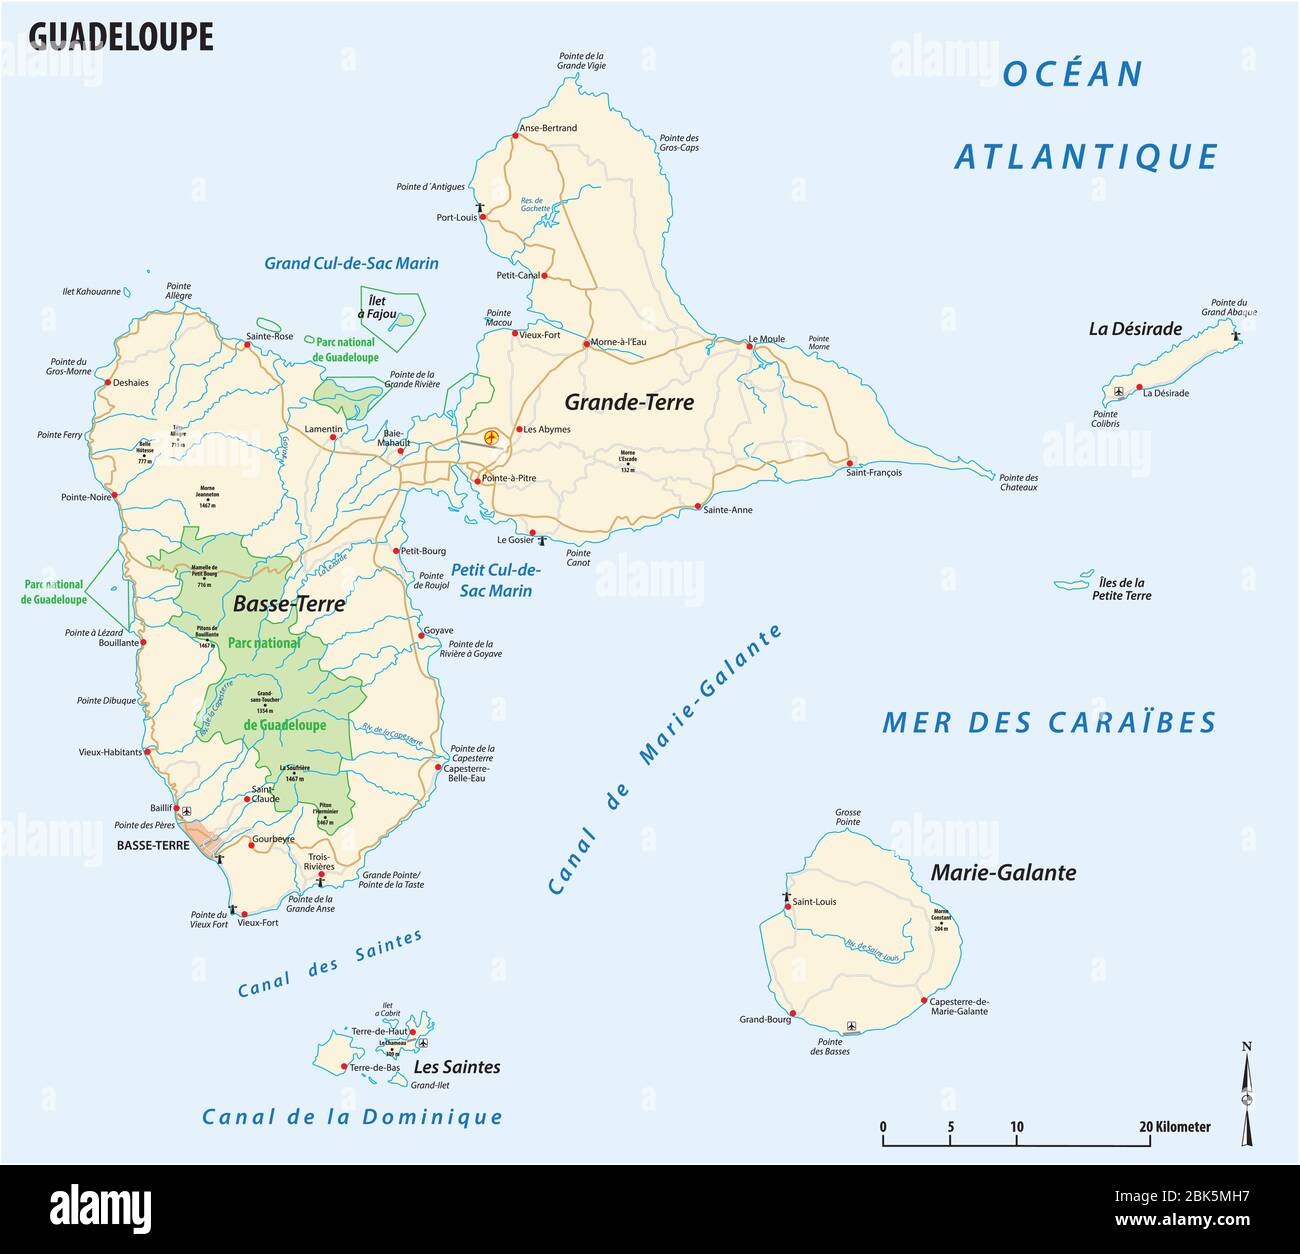 Carte routière vectorielle du territoire français d'outre-mer de Guadeloupe Illustration de Vecteur